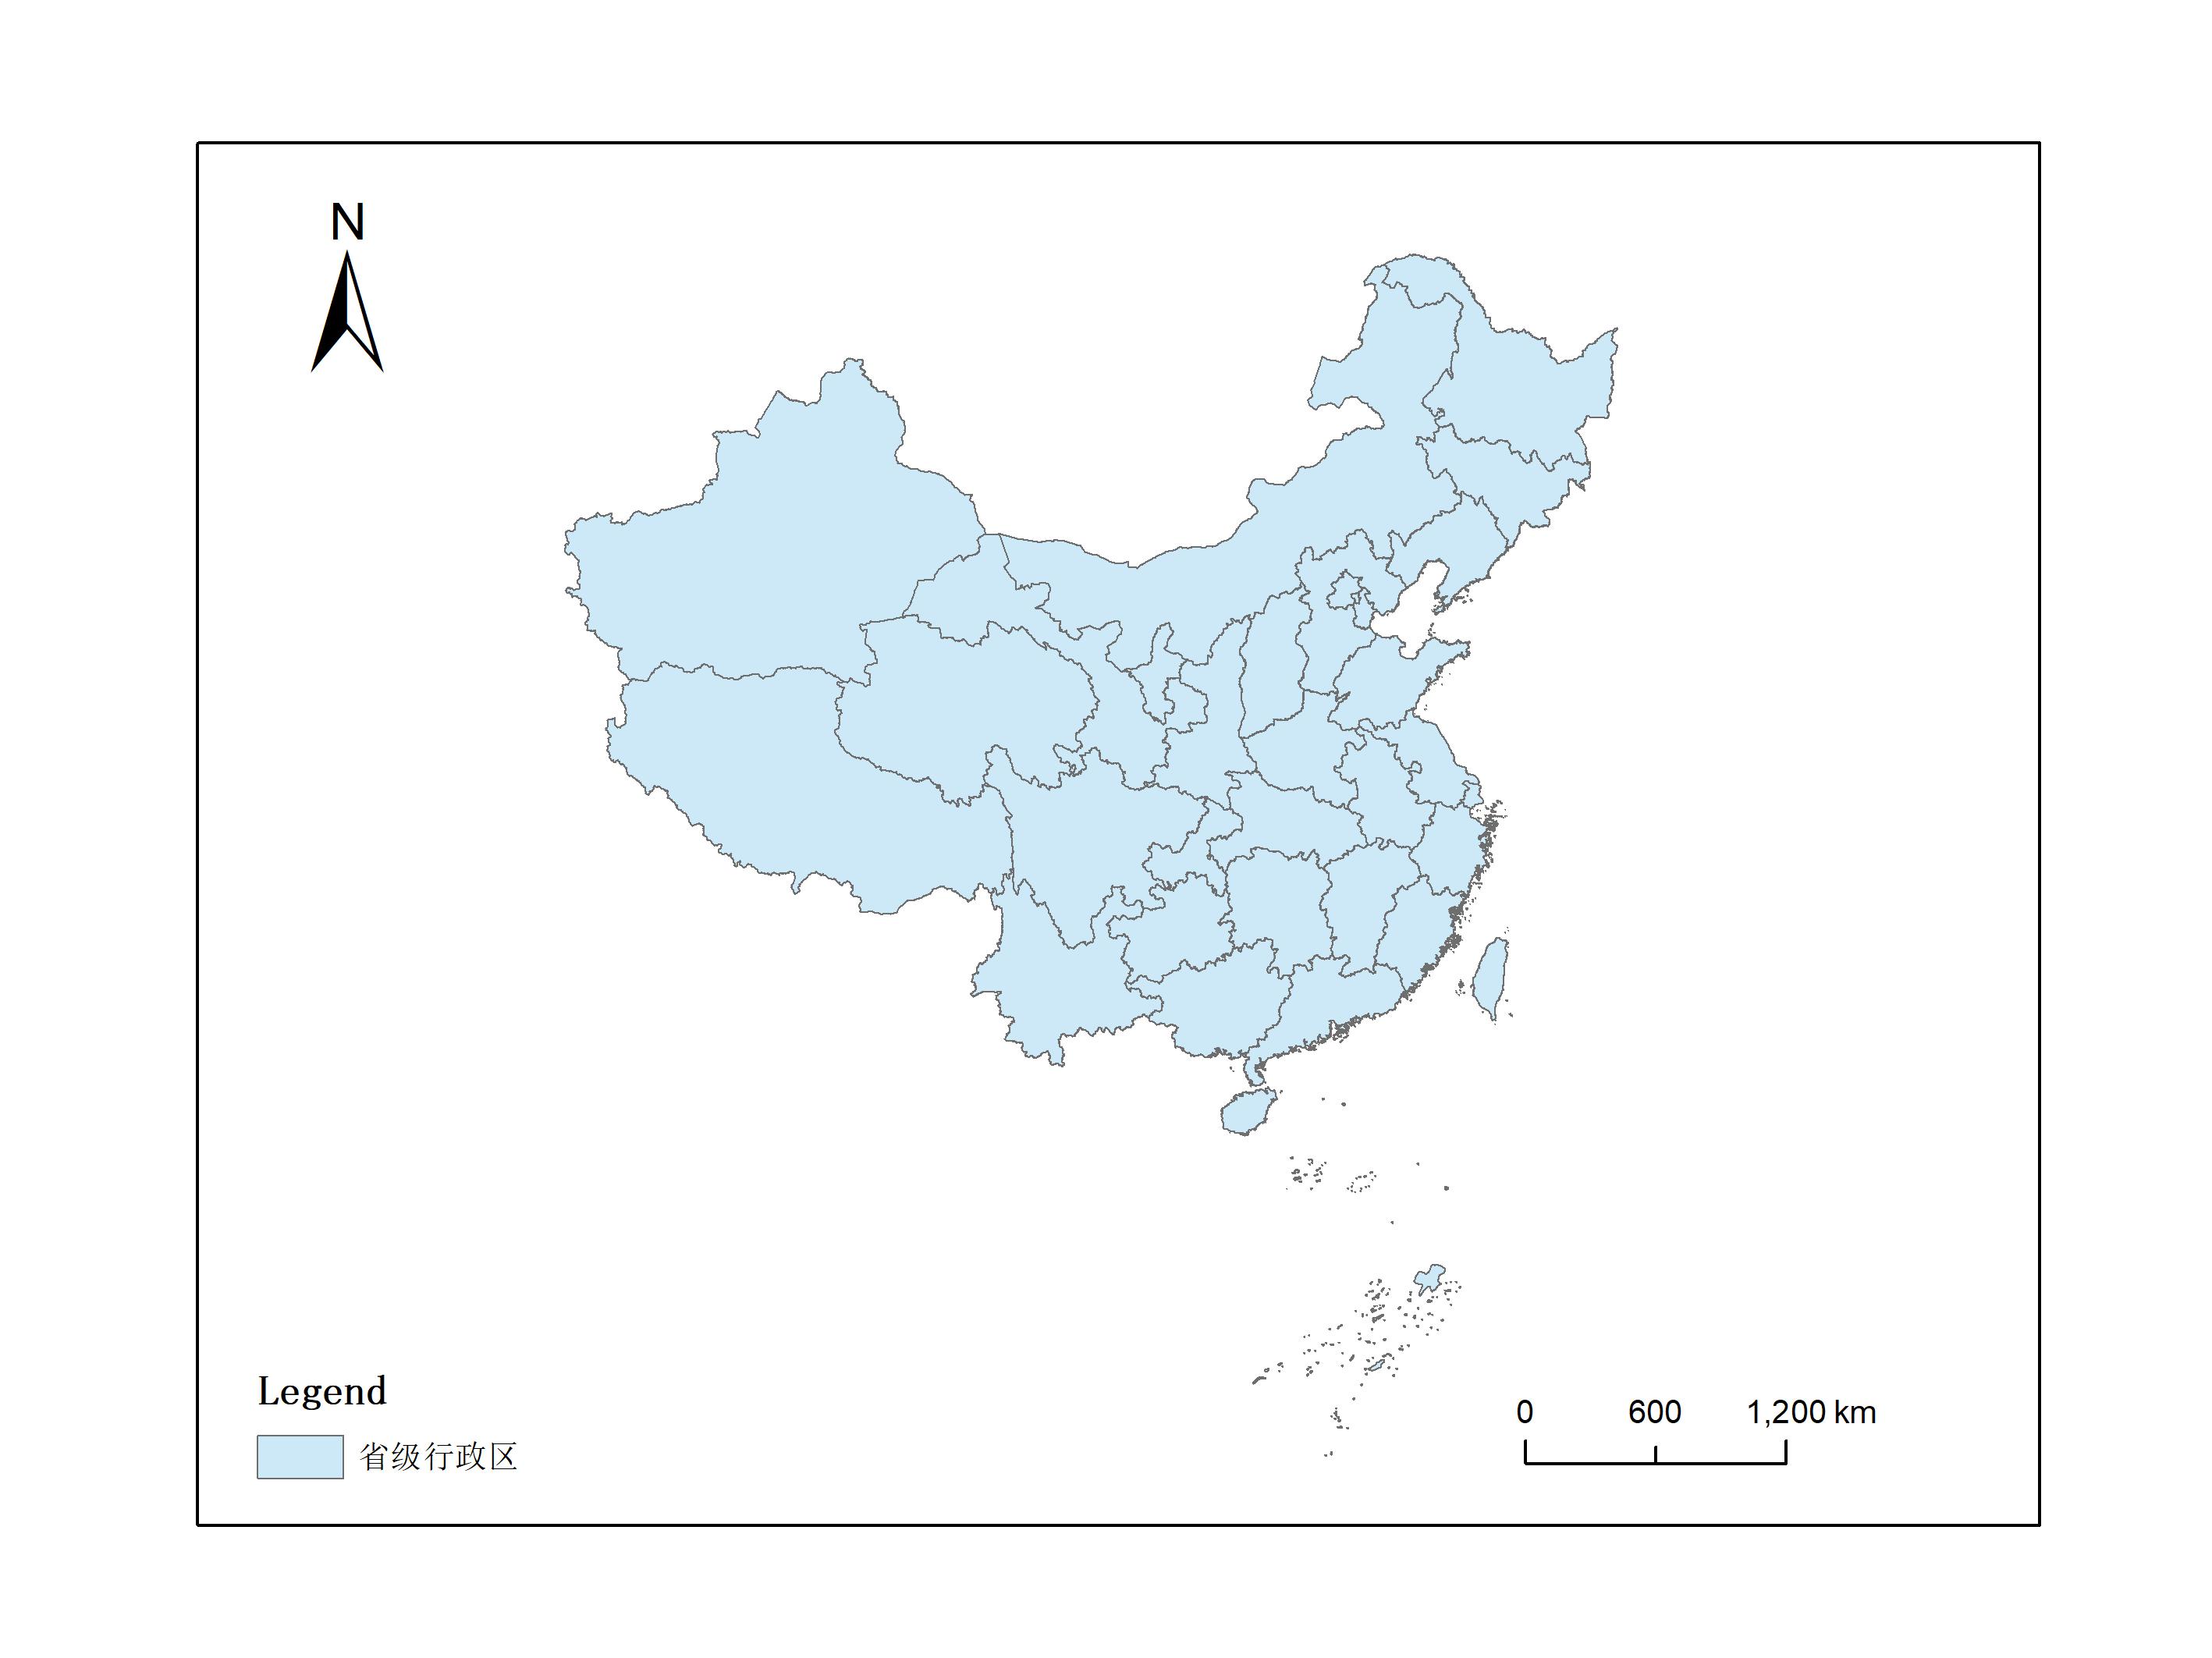 中国1:400万基础地理要素数据集